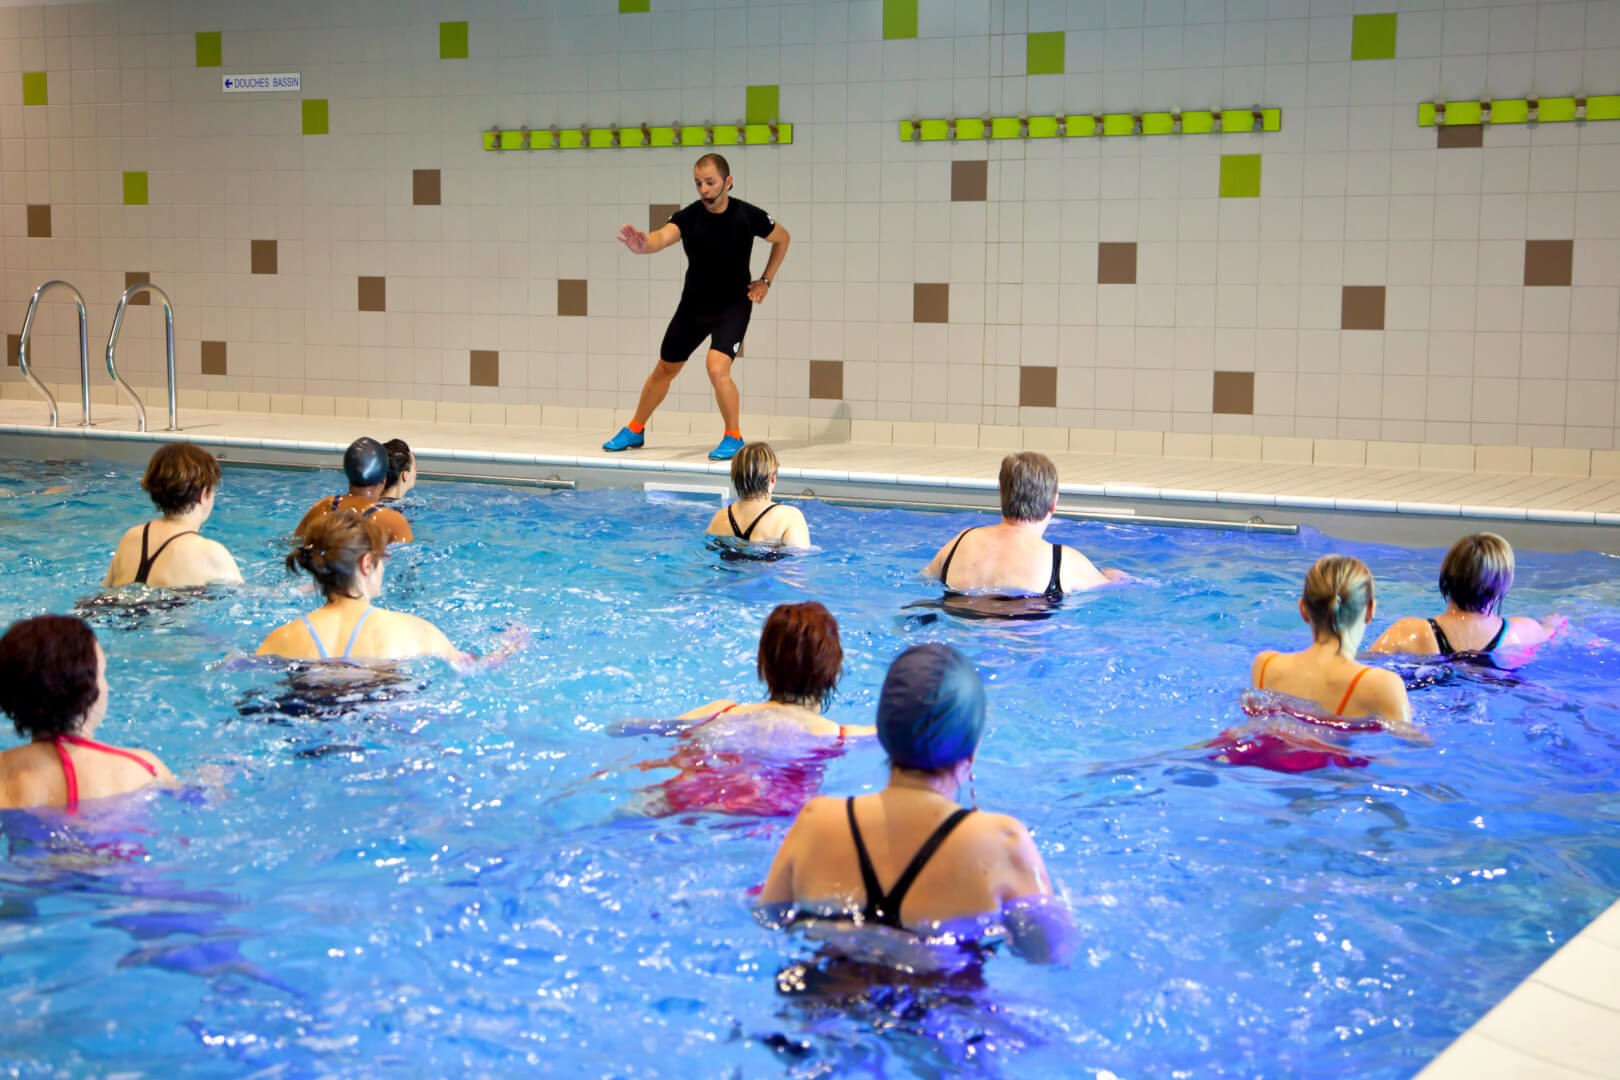 En la imagen aparece un monitor de aquagym practicando un ejercicio ante la atenta mirada de sus alumnas, mujeres mayores que quieren practicar ejercicios de aquagym. 